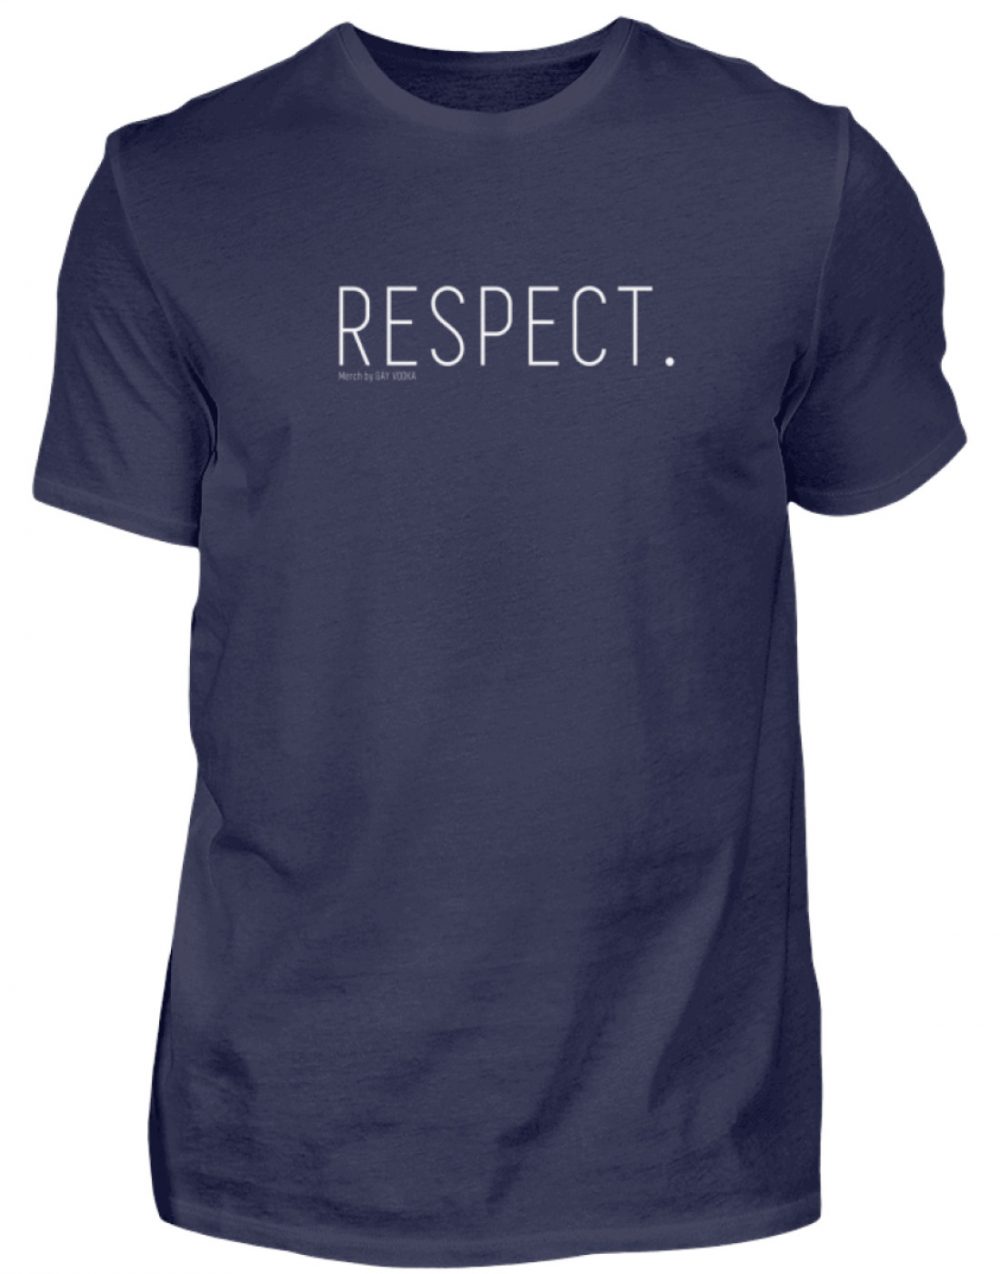 RESPECT. - Herren Premiumshirt-198